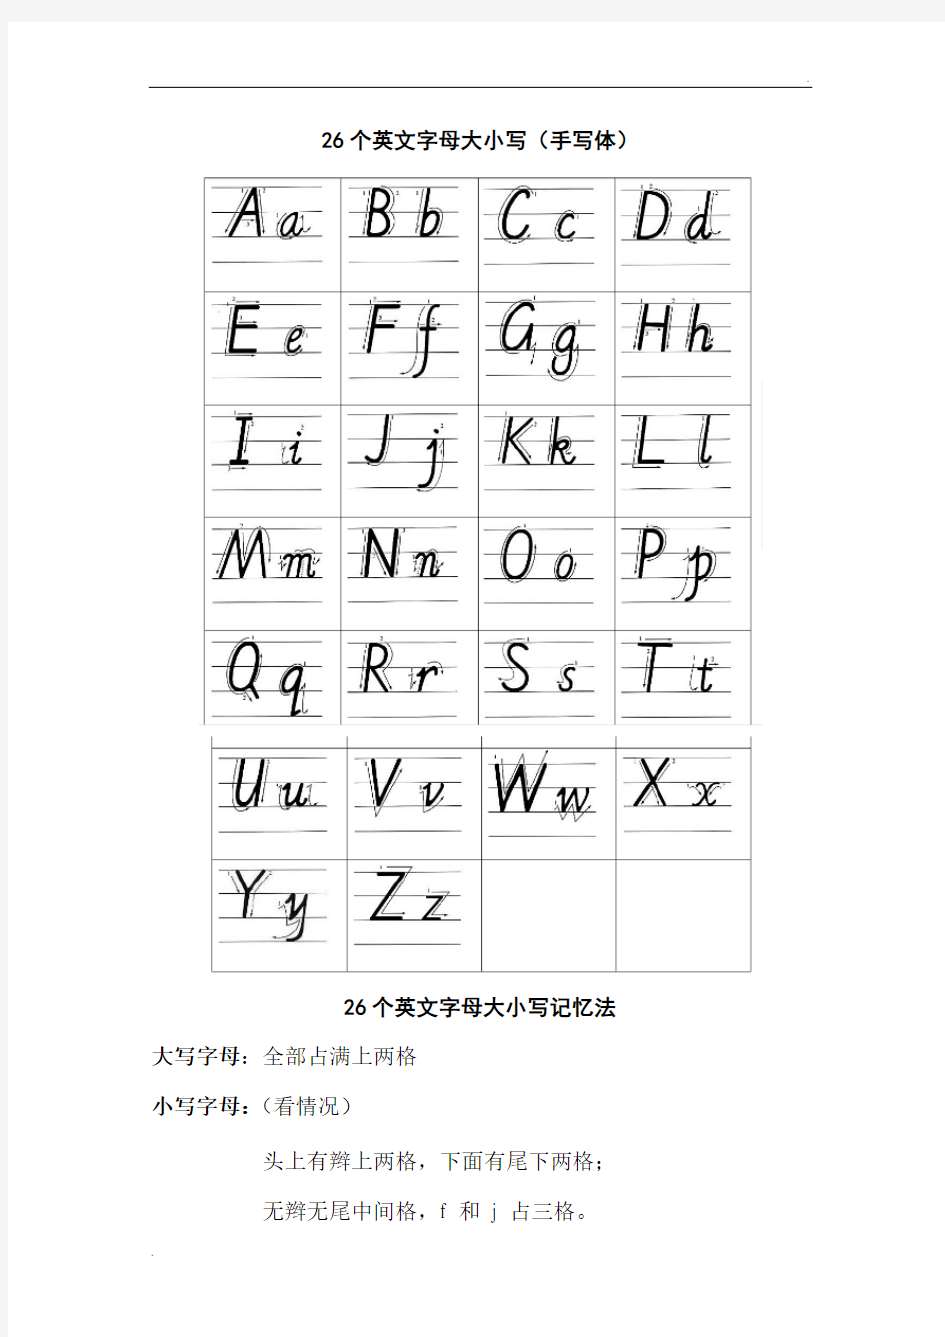 26个英文字母大小写(手写体) (2)